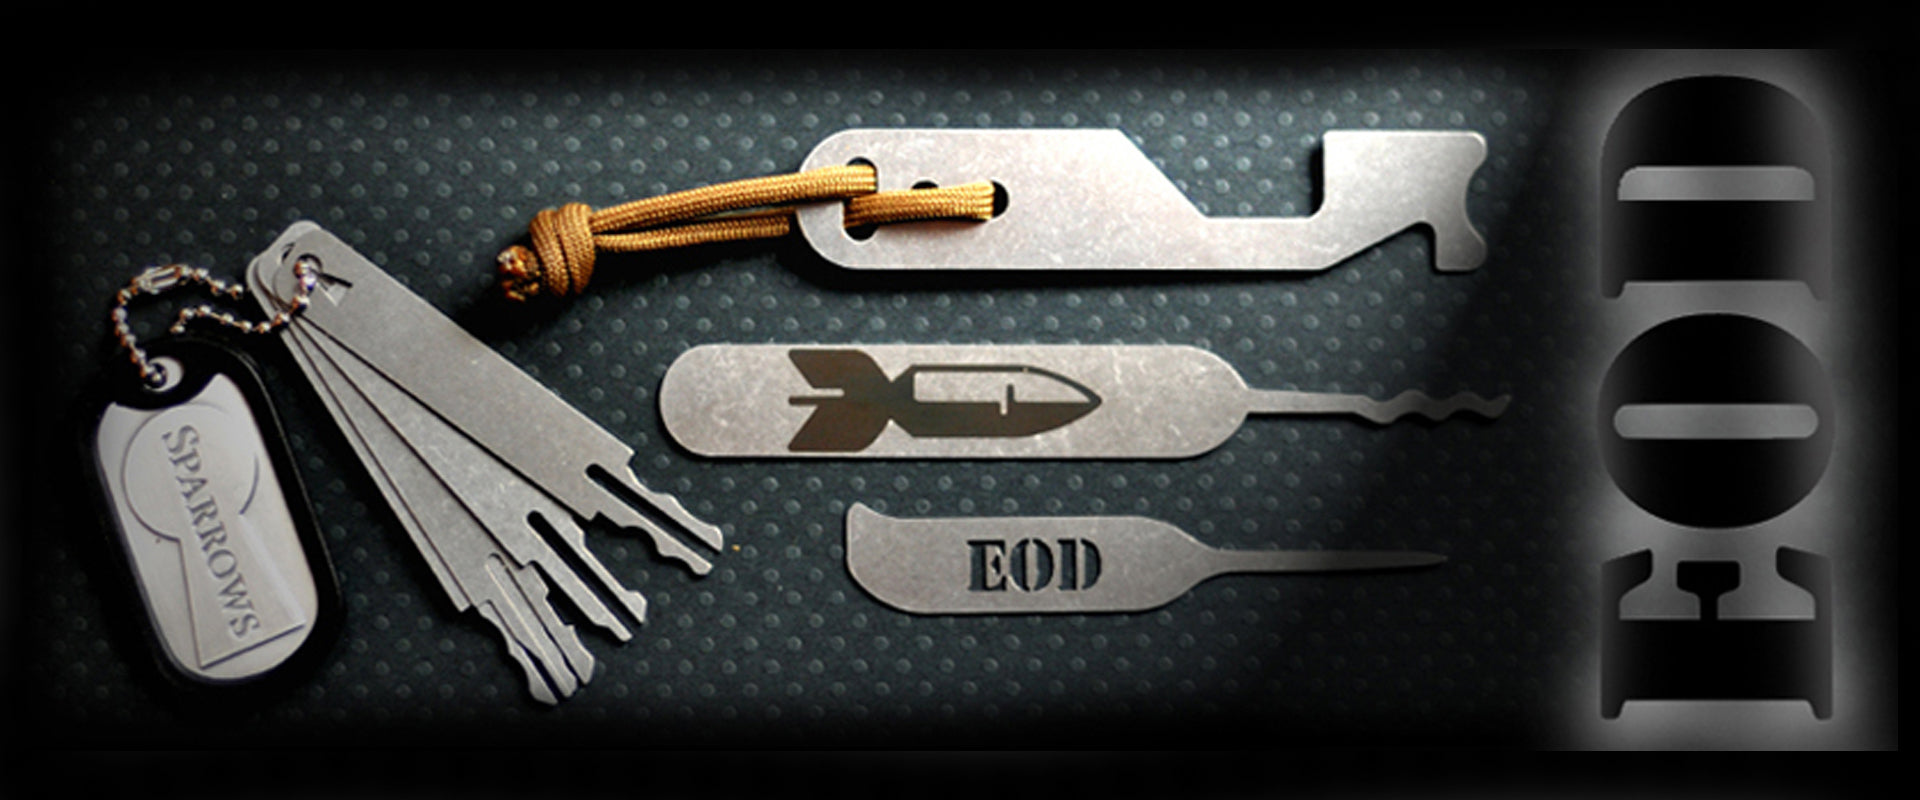 Full Lock Picking Tool Kit - EOD Gear